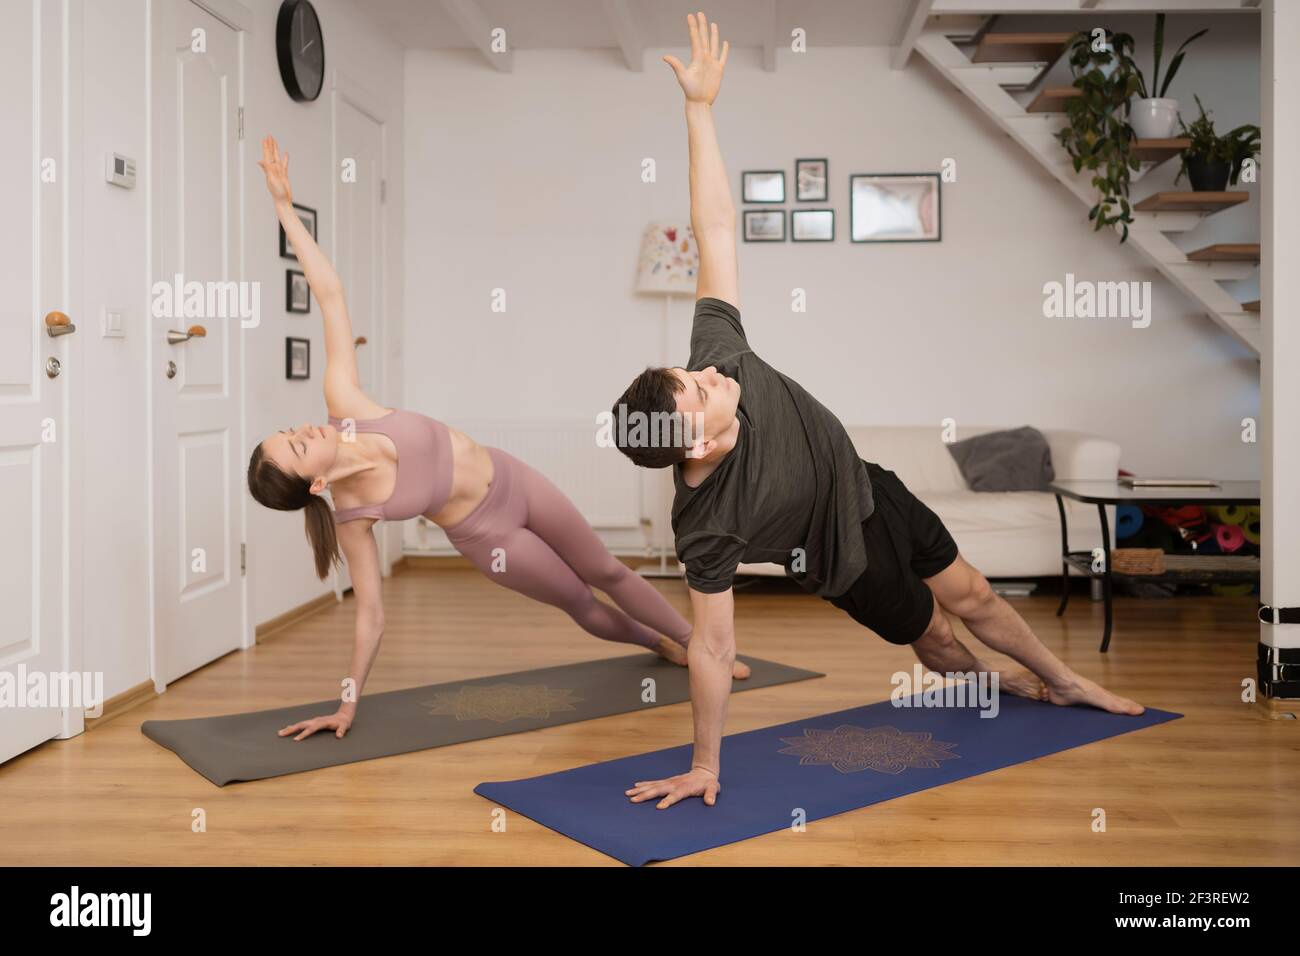 Giovane coppia che pratica yoga insieme a casa in un interno moderno. Hobby, togetherness, stile di vita sano Foto Stock